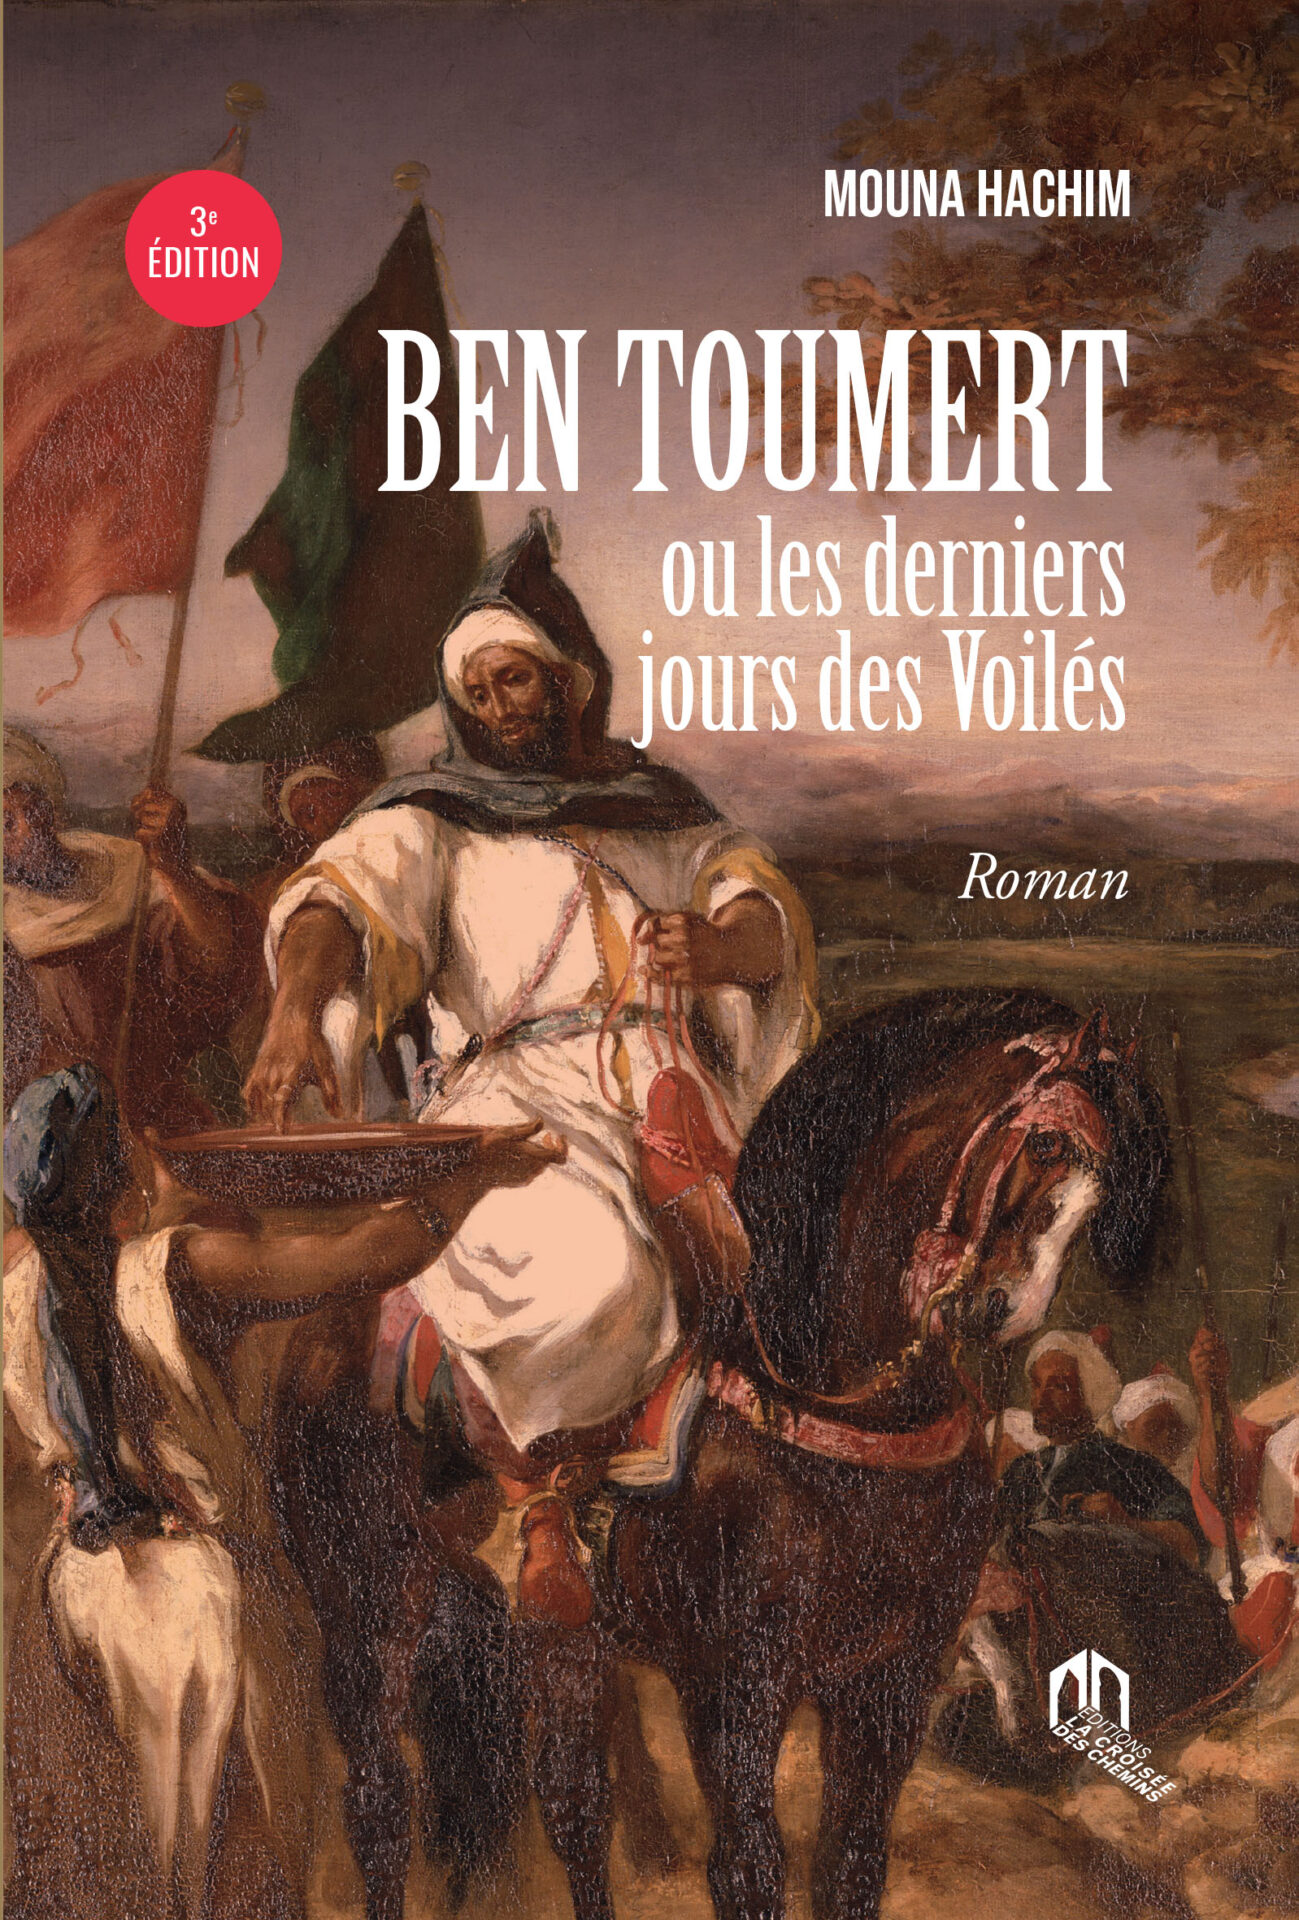 9789920769952 Ben Toumert 3e edition